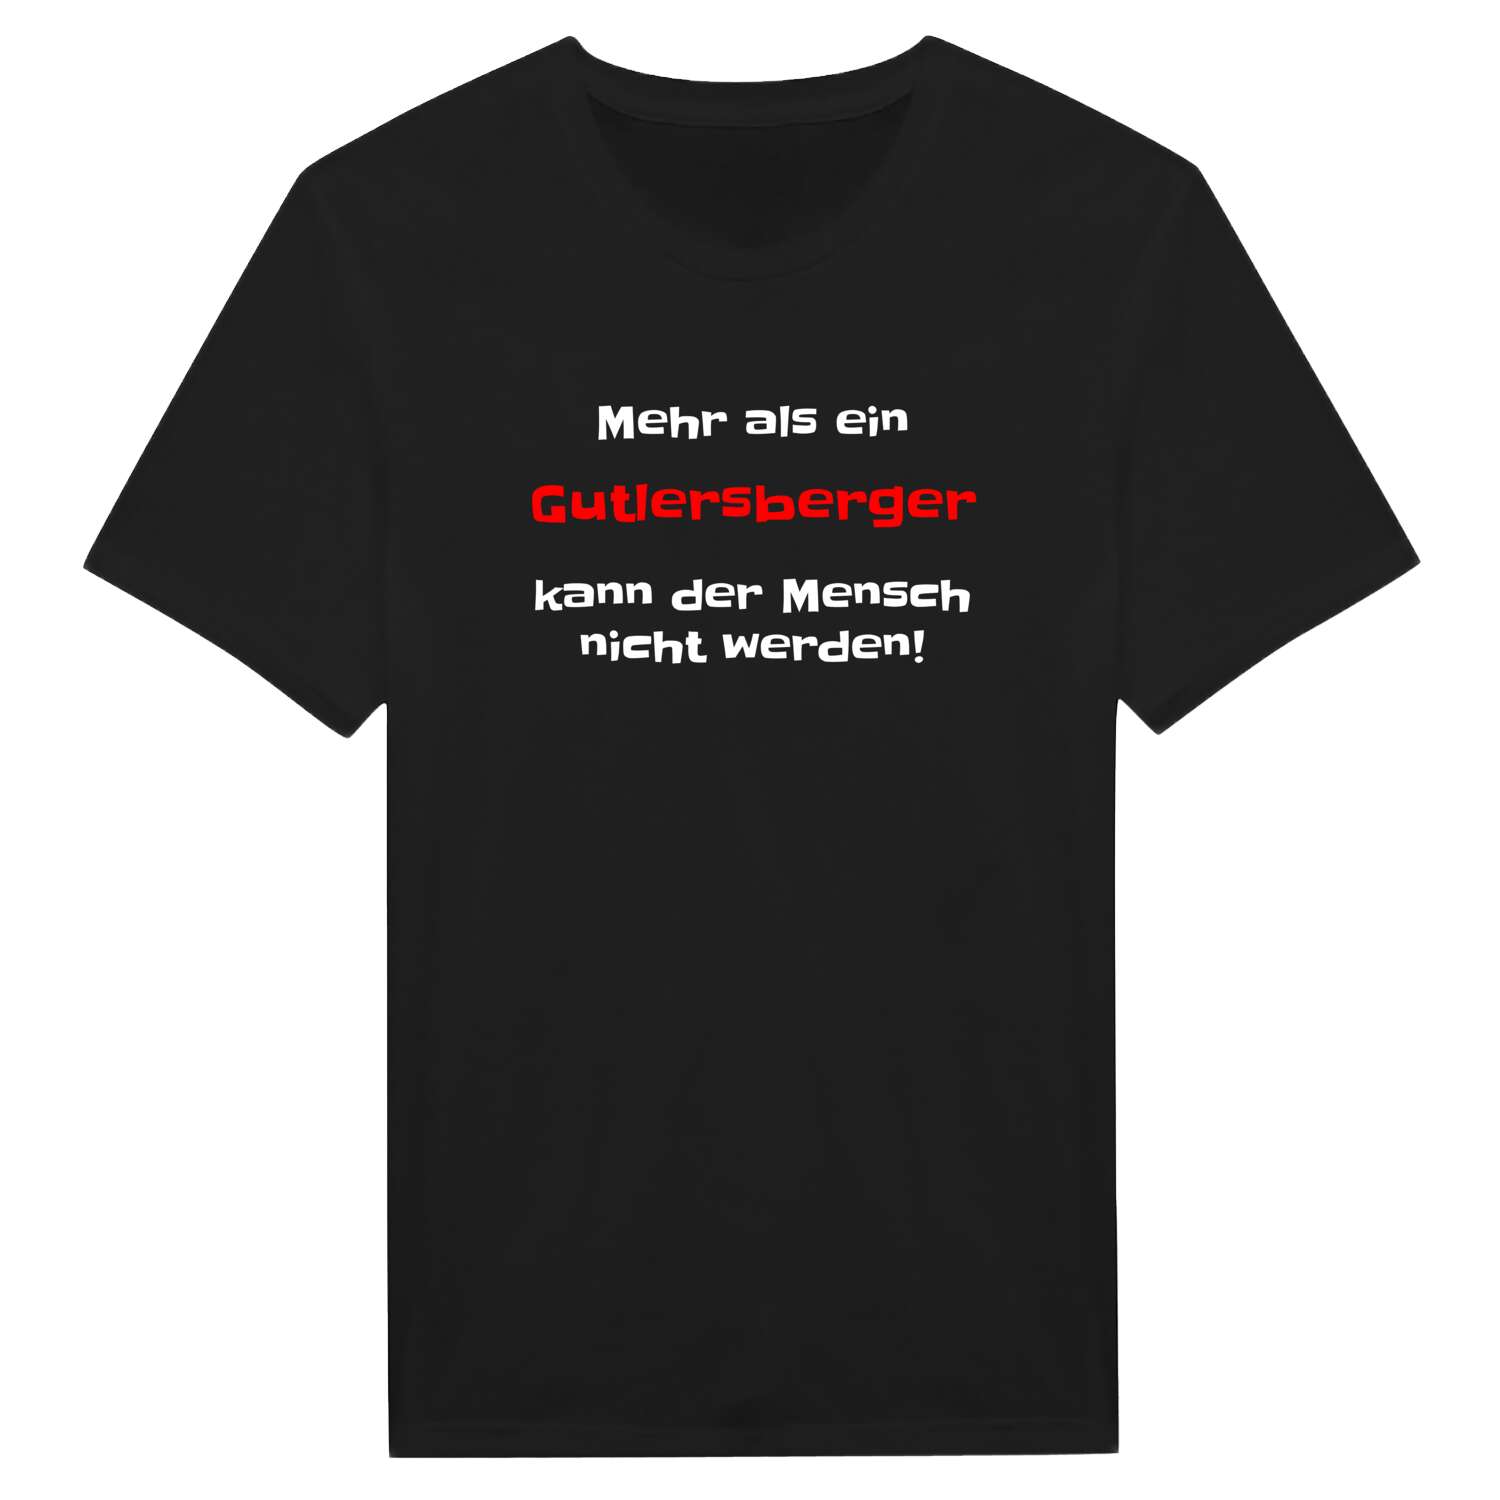 Gutlersberg T-Shirt »Mehr als ein«